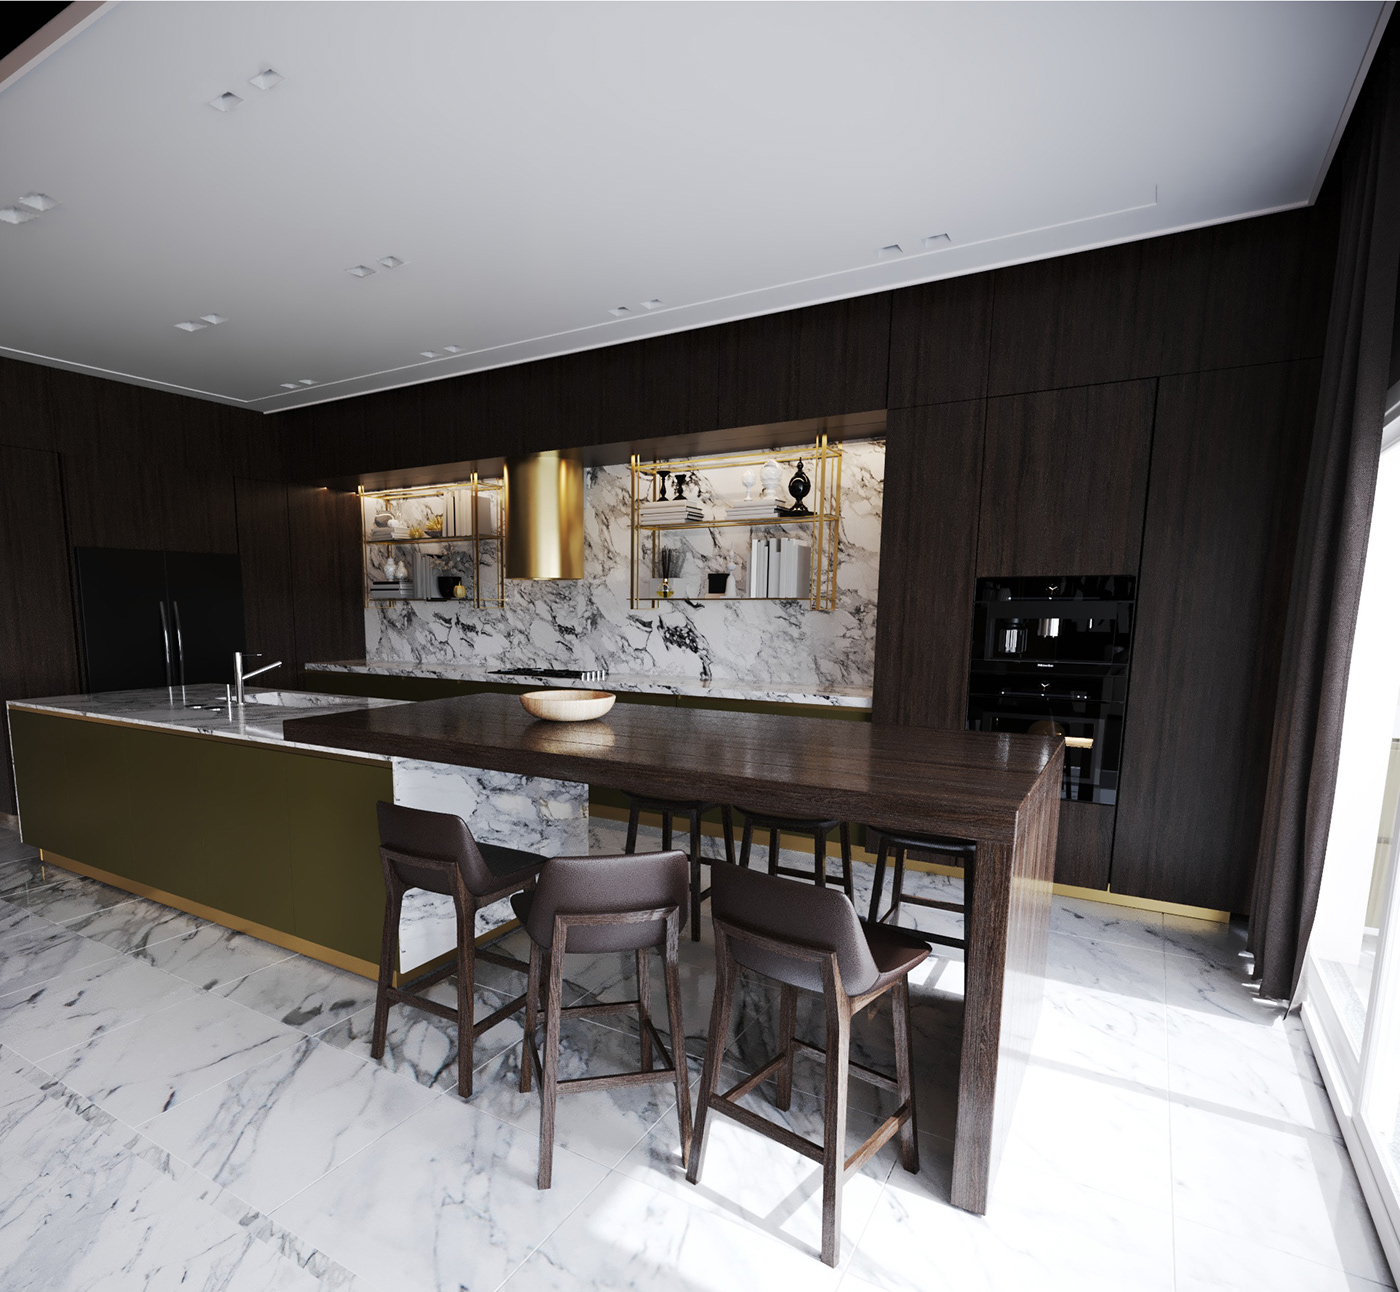 reception interior design  decor architecture kitchen Marble Open Space Interior Architecture 3dsmax